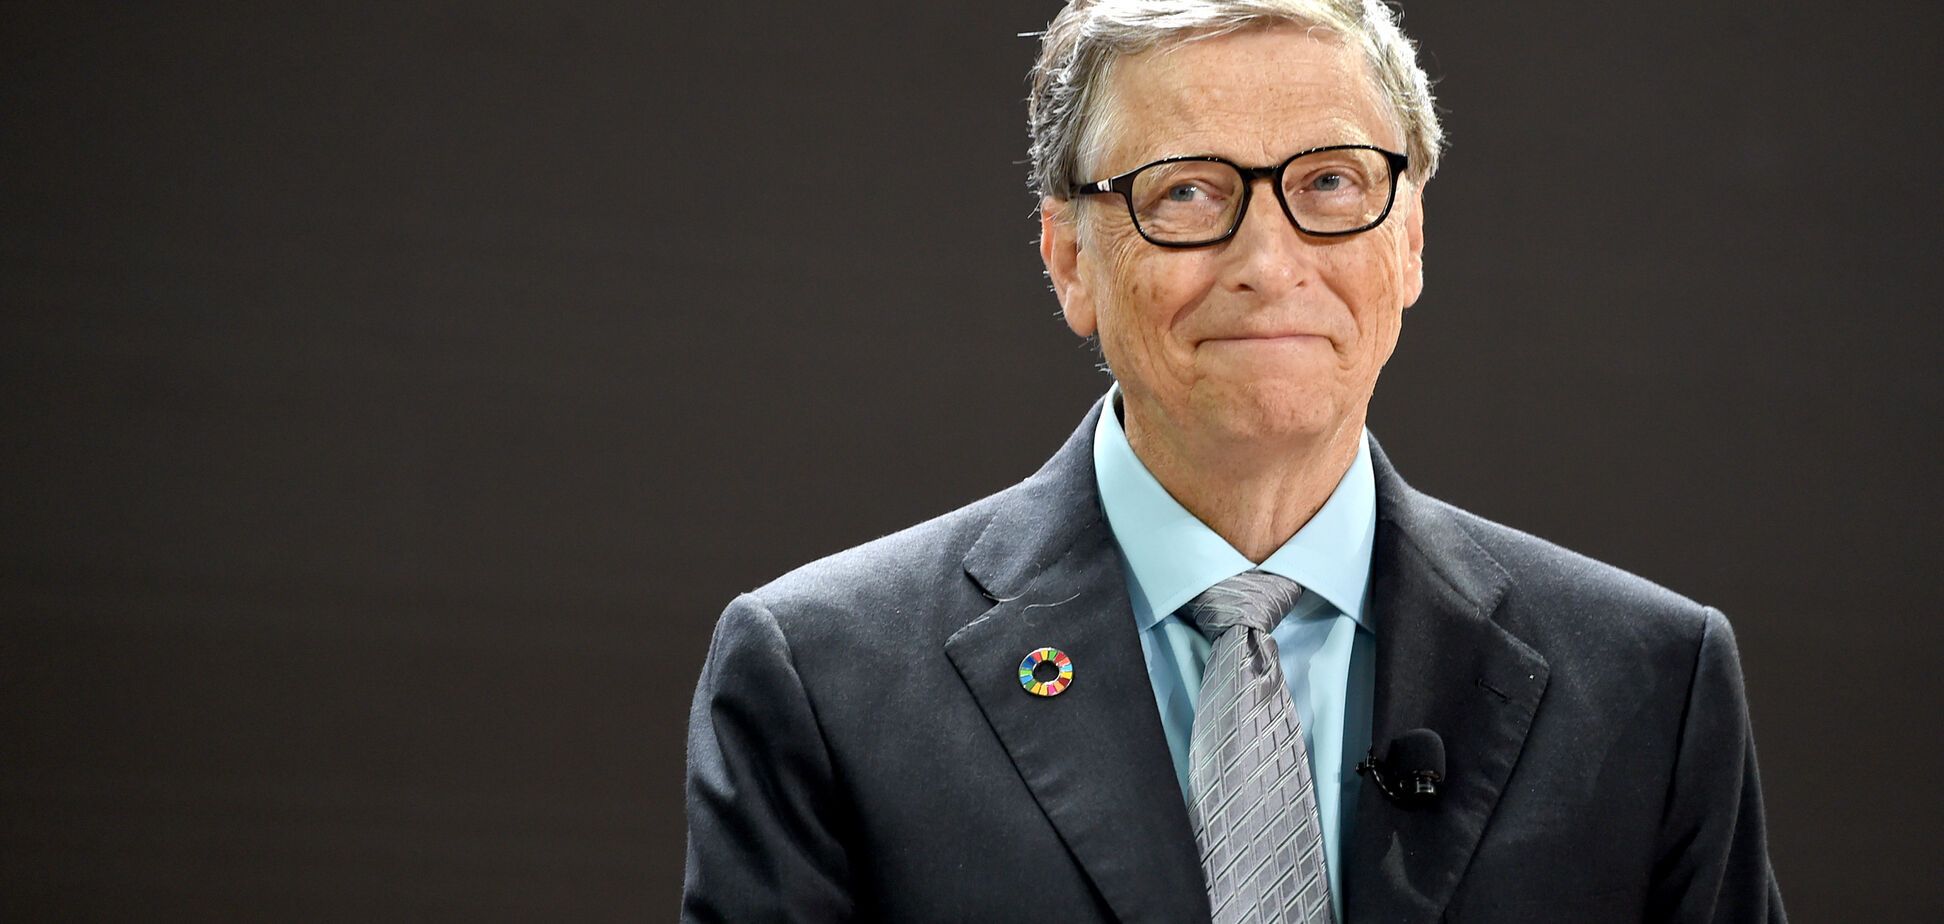 Бил Гейтс обрушил стоимость биткоина